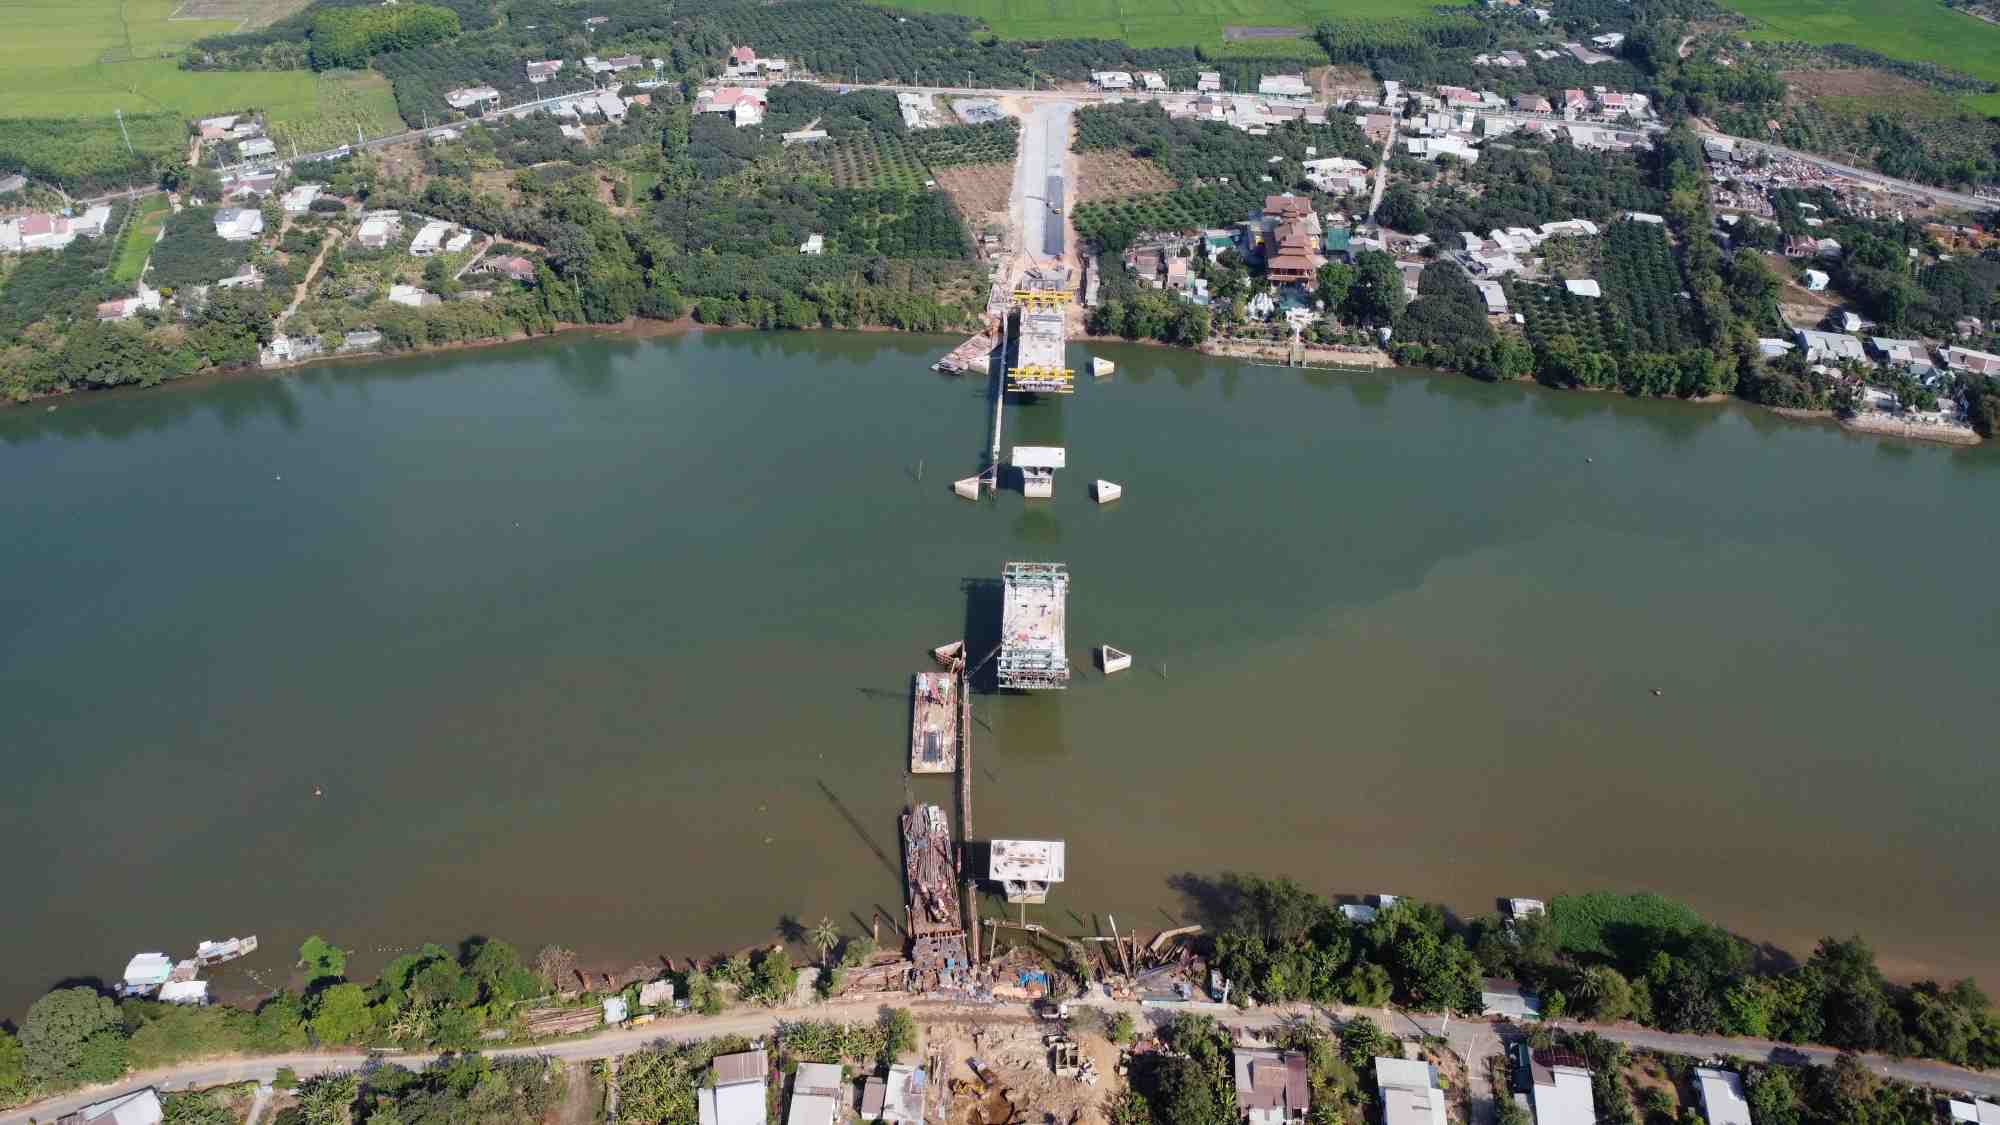 Đây là công trường thi công cầu Bạch Đằng 2 bắc qua sông Đồng Nai, nối thành phố Tân Uyên (tỉnh Bình Dương) với huyện Vĩnh Cửu (tỉnh Đồng Nai)